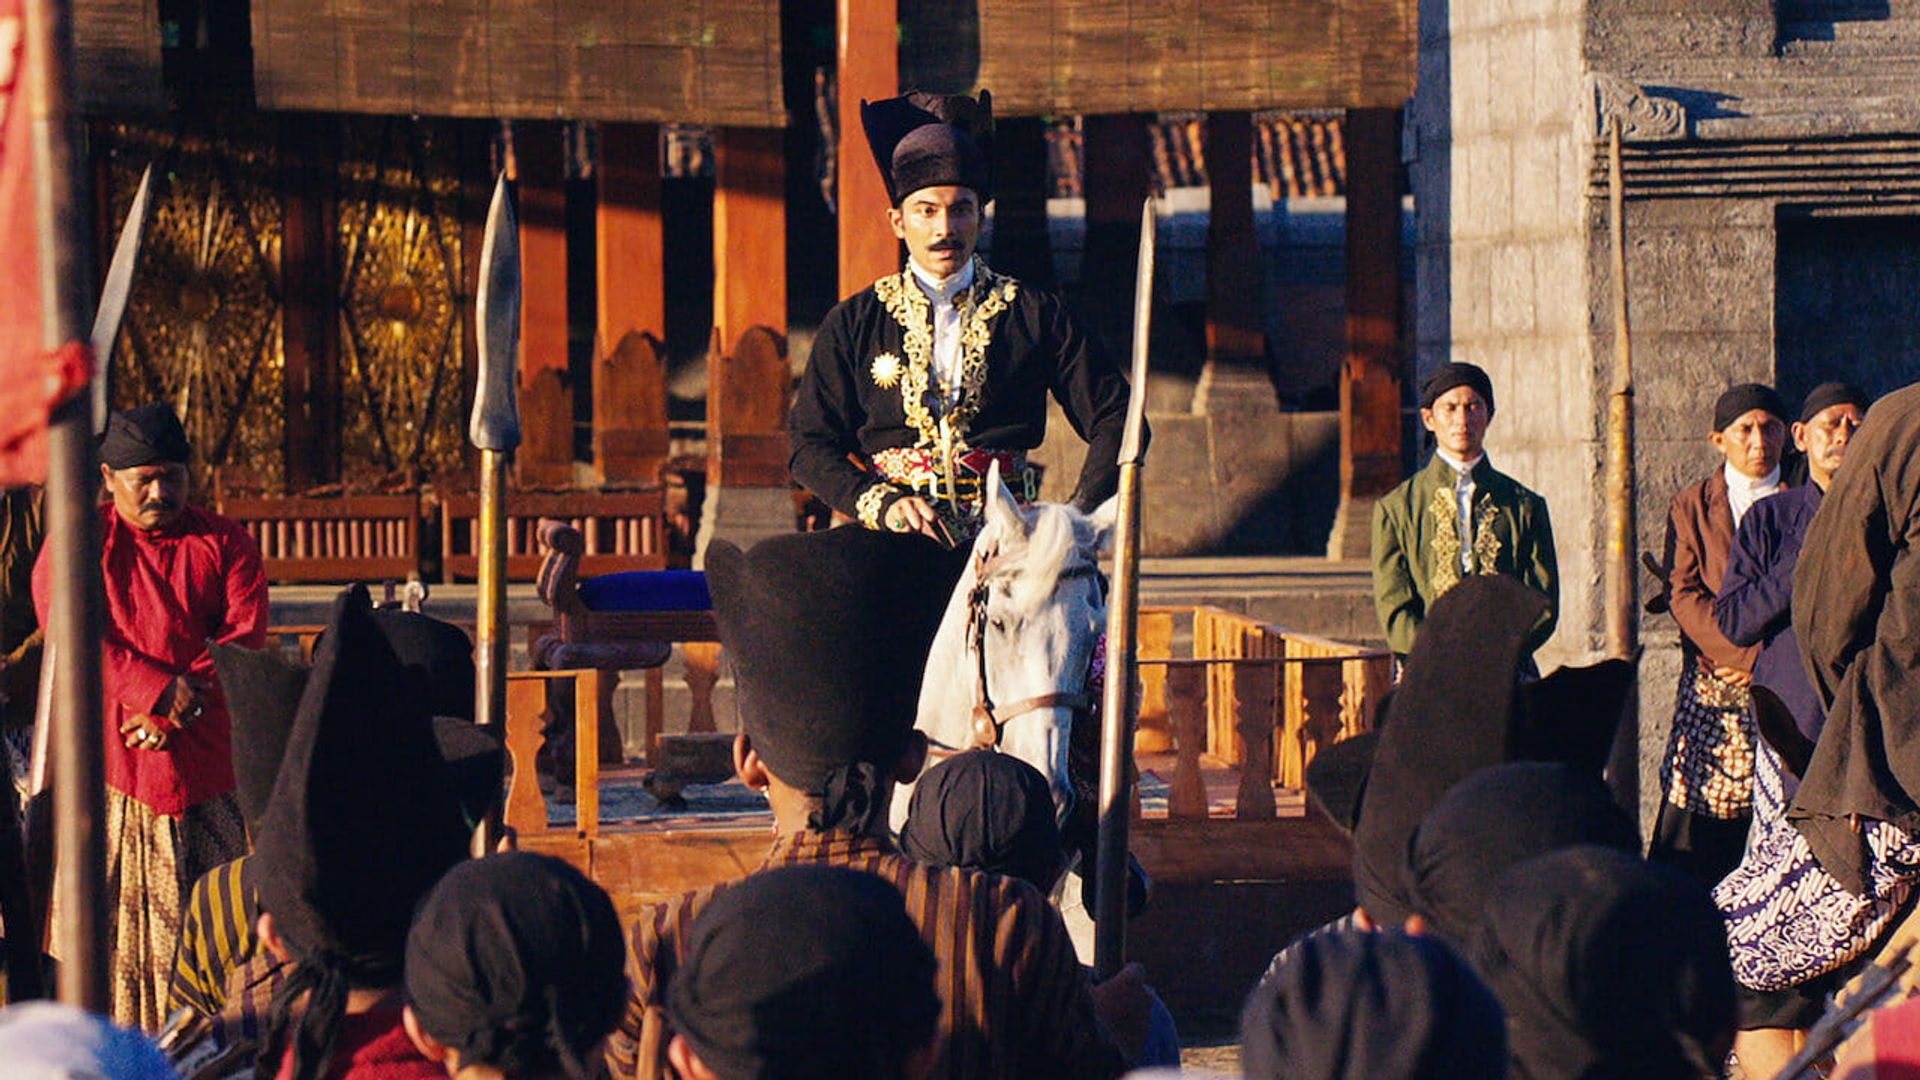 Sultan Agung: Tahta, Perjuangan, Cinta background